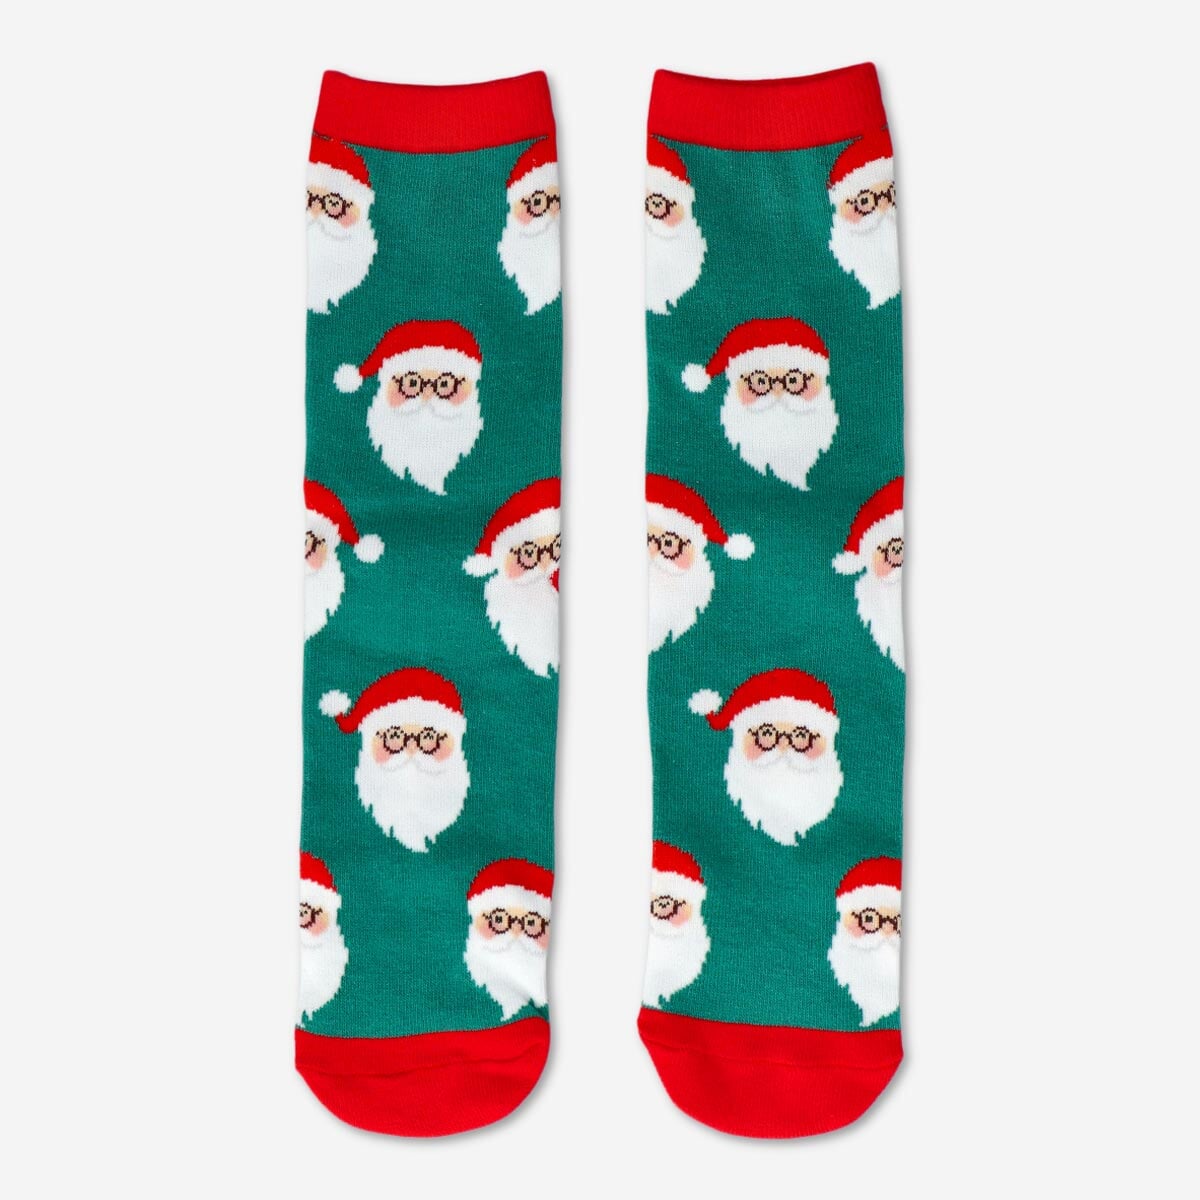 A karácsonyi BFF: A zoknirajongó